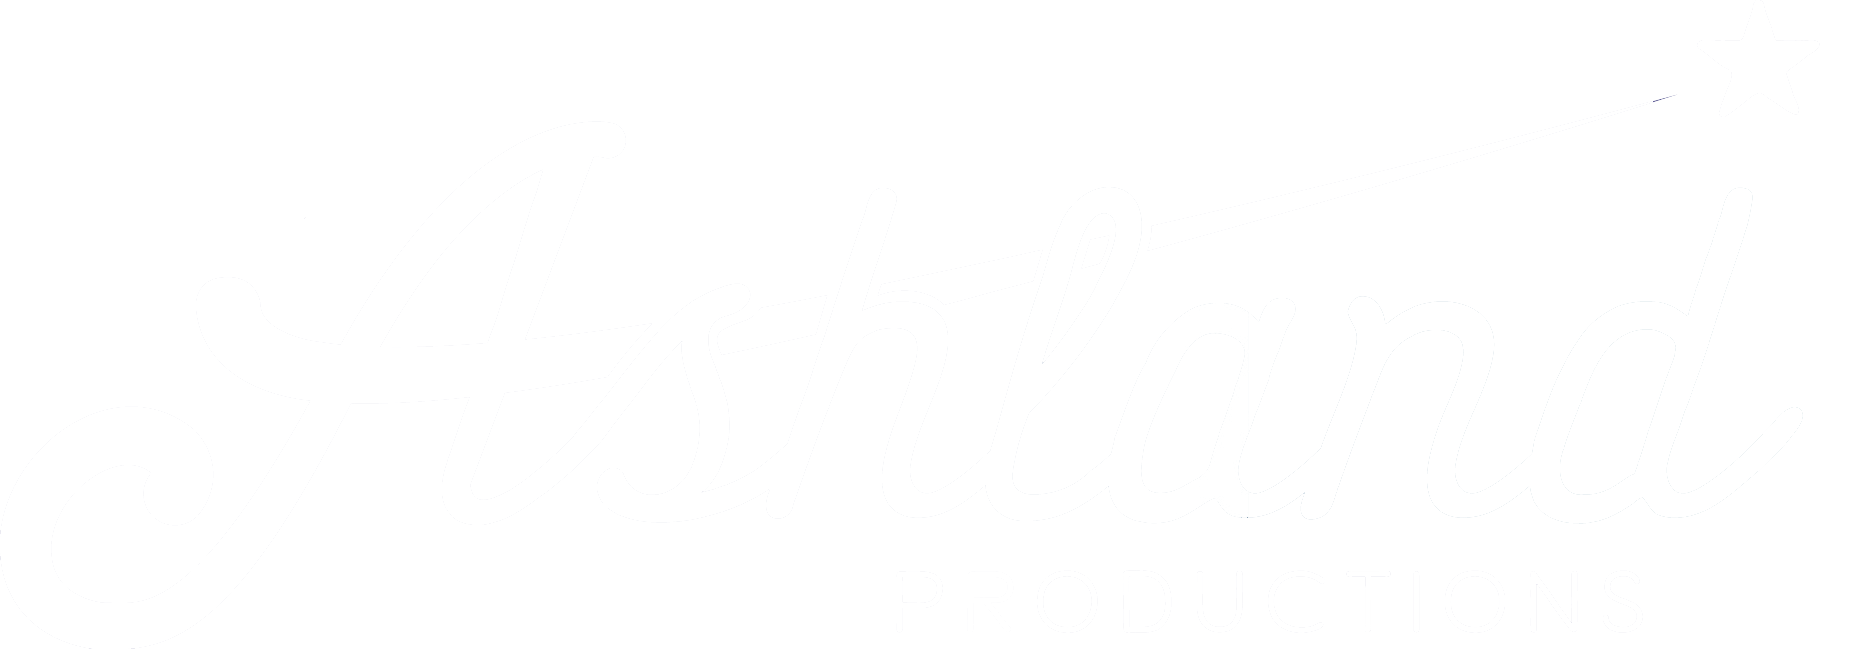 Ashland Productions